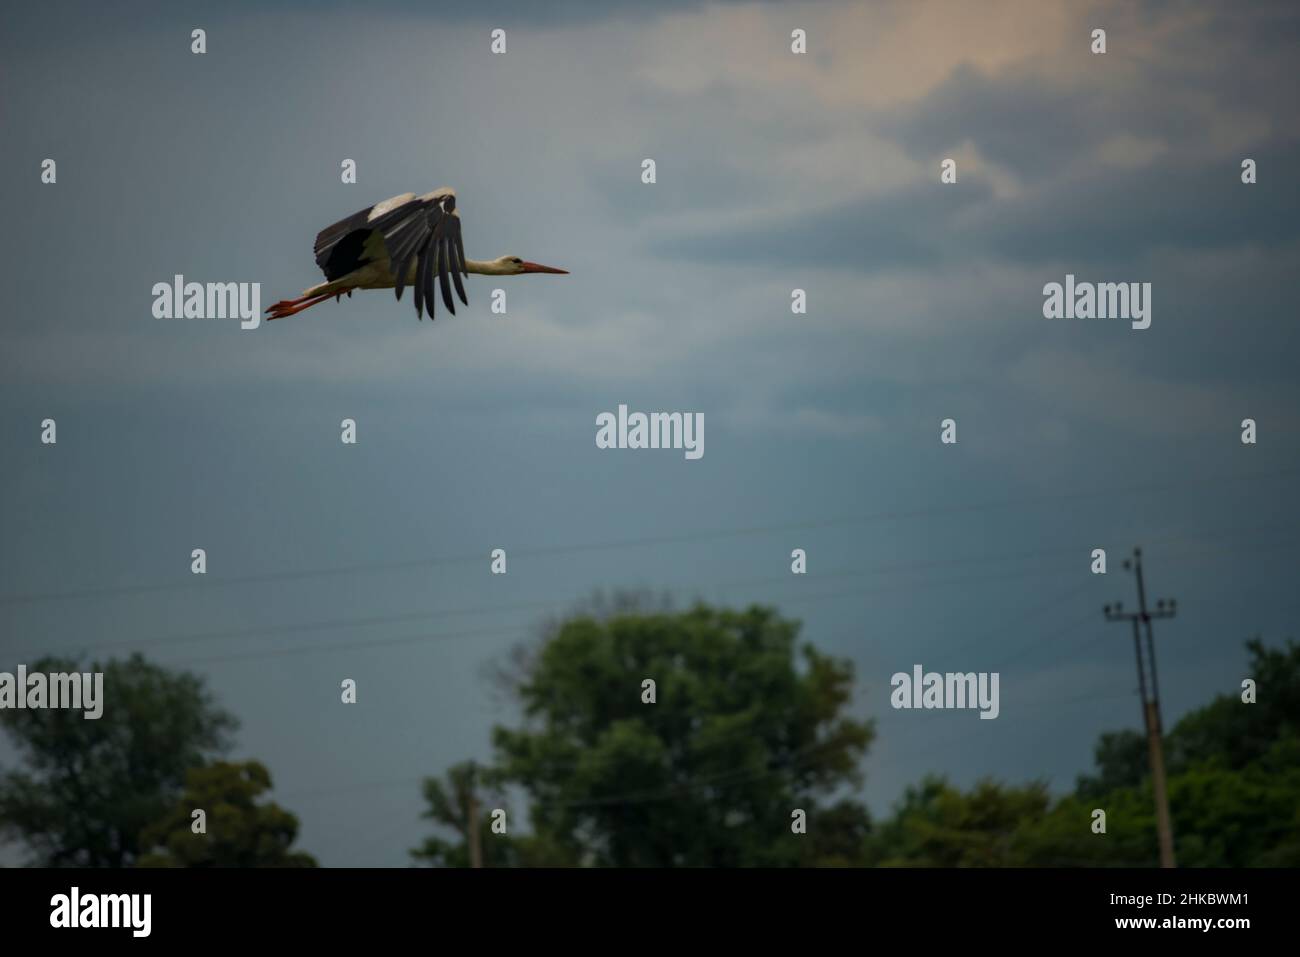 Ukraine, Romny Region, Vovkivtsy village. A stork flight. Stock Photo